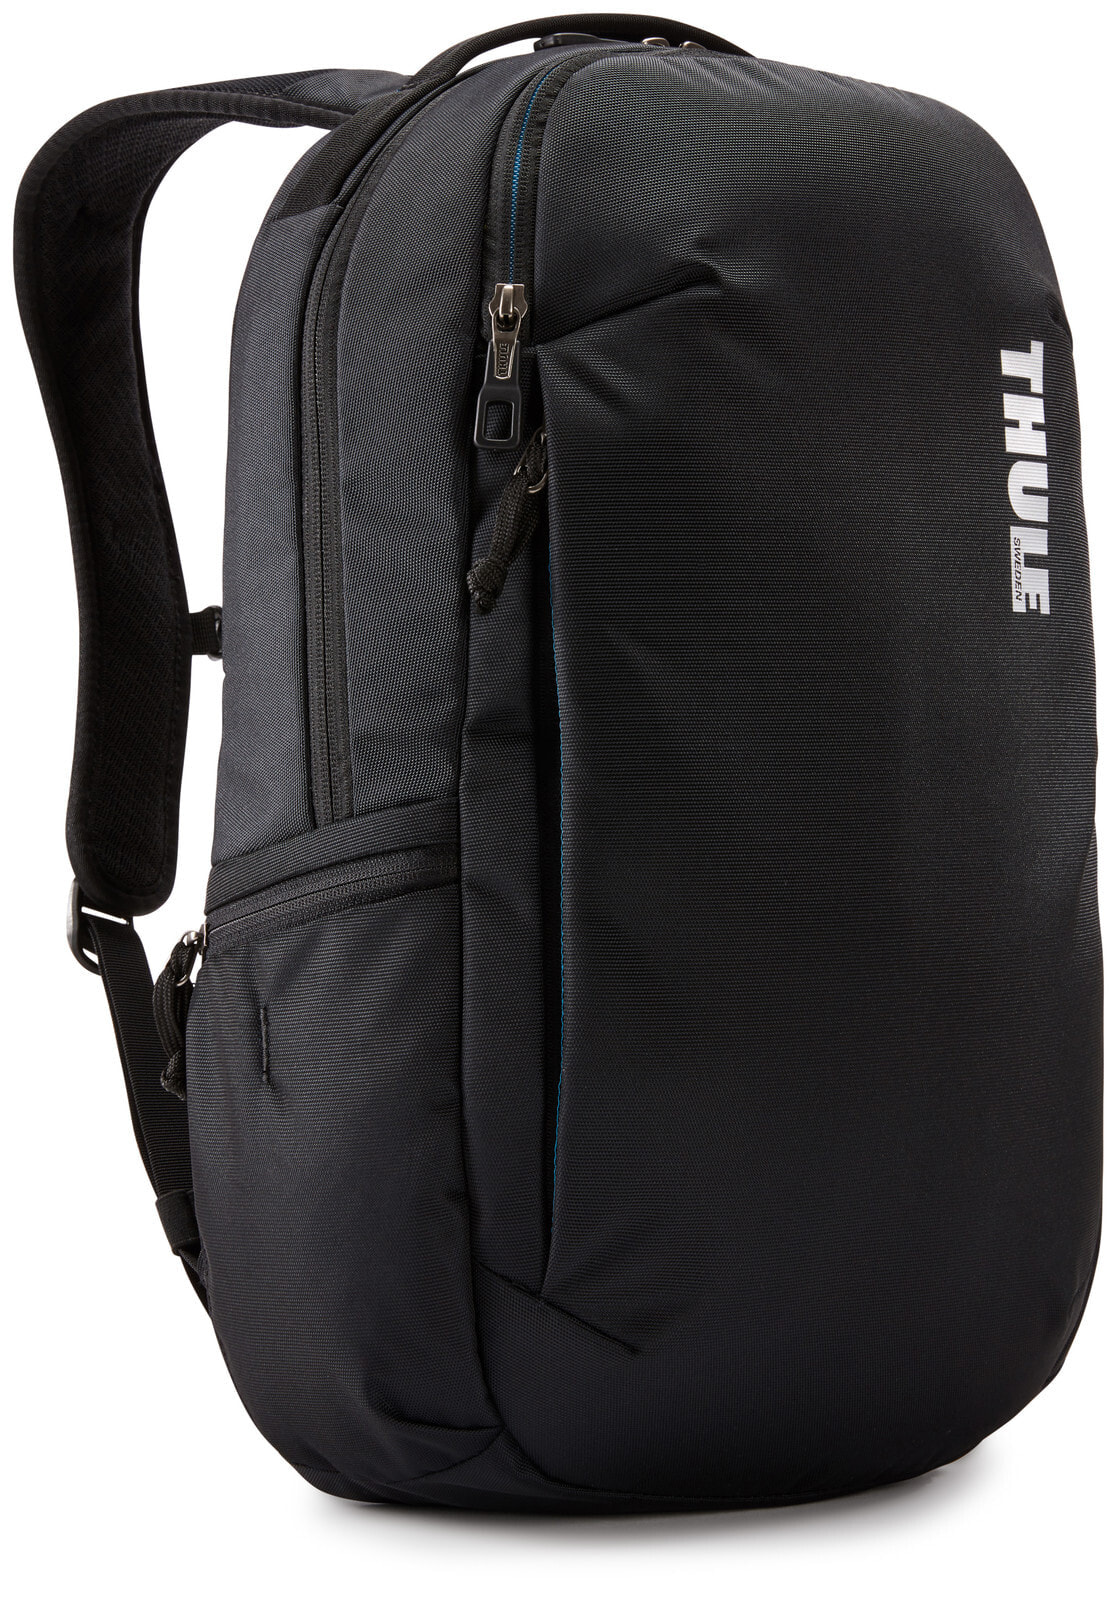 Мужской повседневный городской рюкзак черный  Нейлон Thule Subterra TSLB-315 Black  3204052